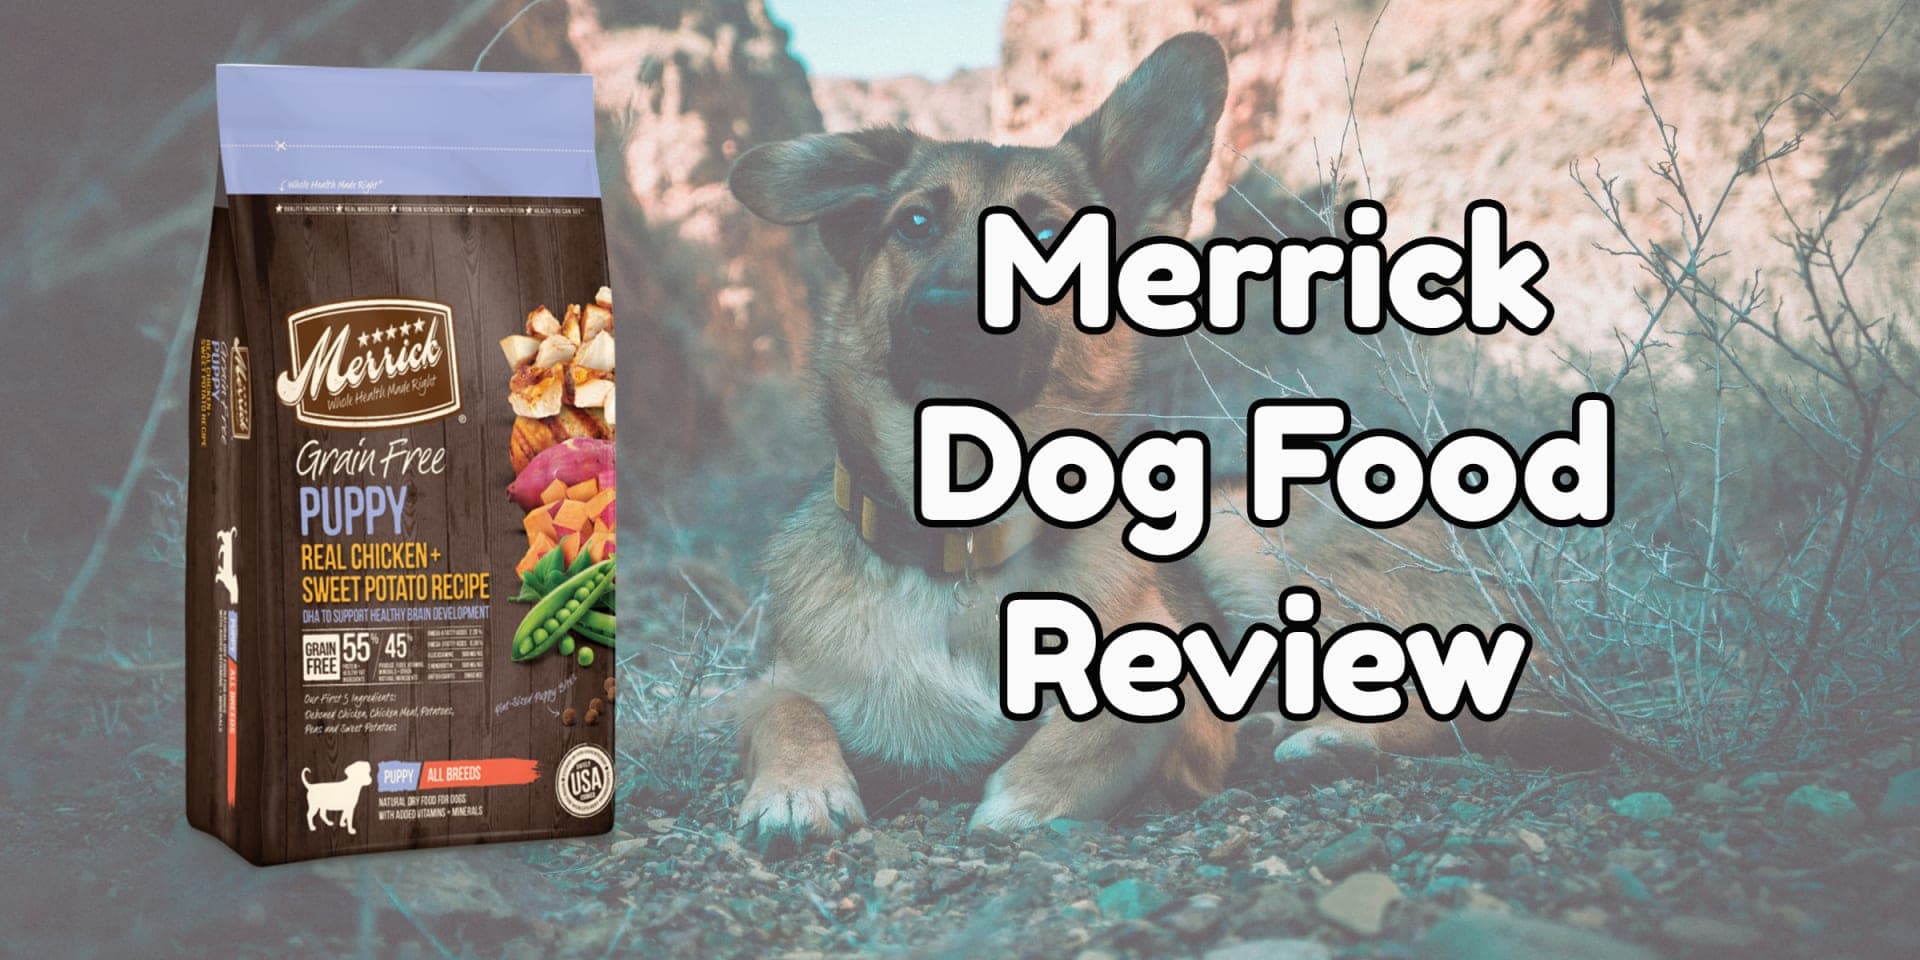 Merrick Dog Food Review